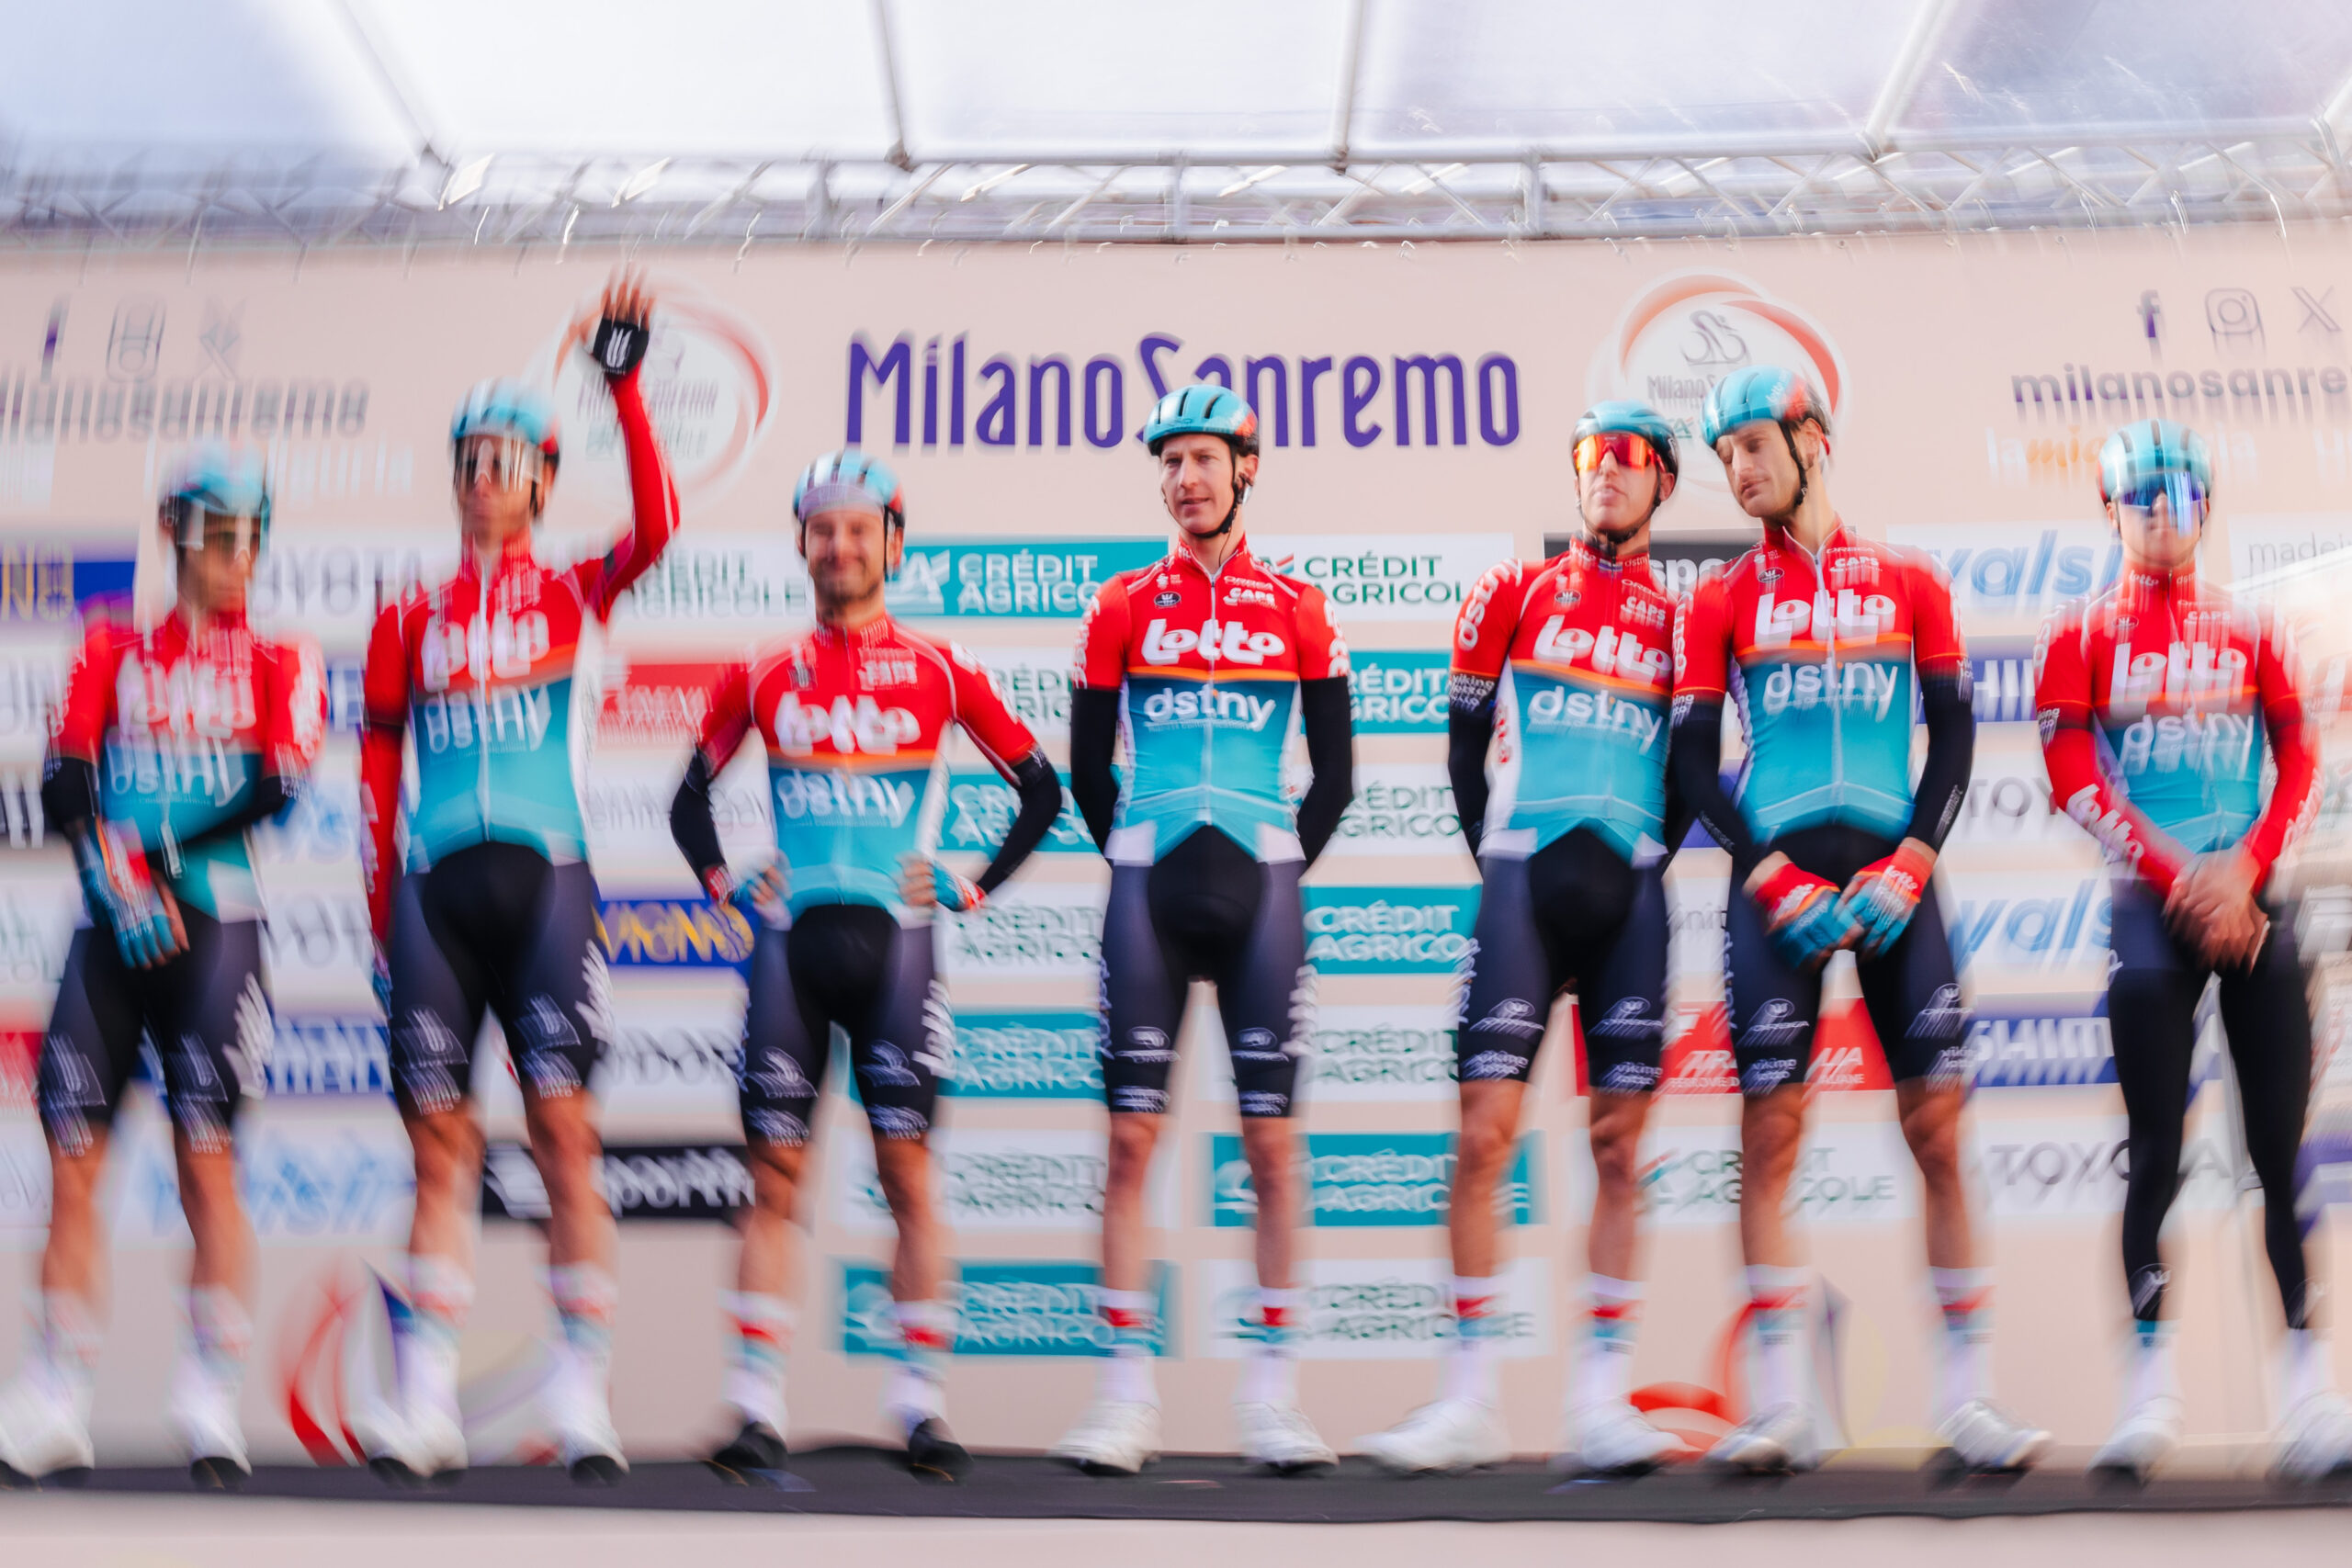 Lotto-Dstny si congeda dall’Italia dopo l’ottima prestazione alla Milano- Sanremo.